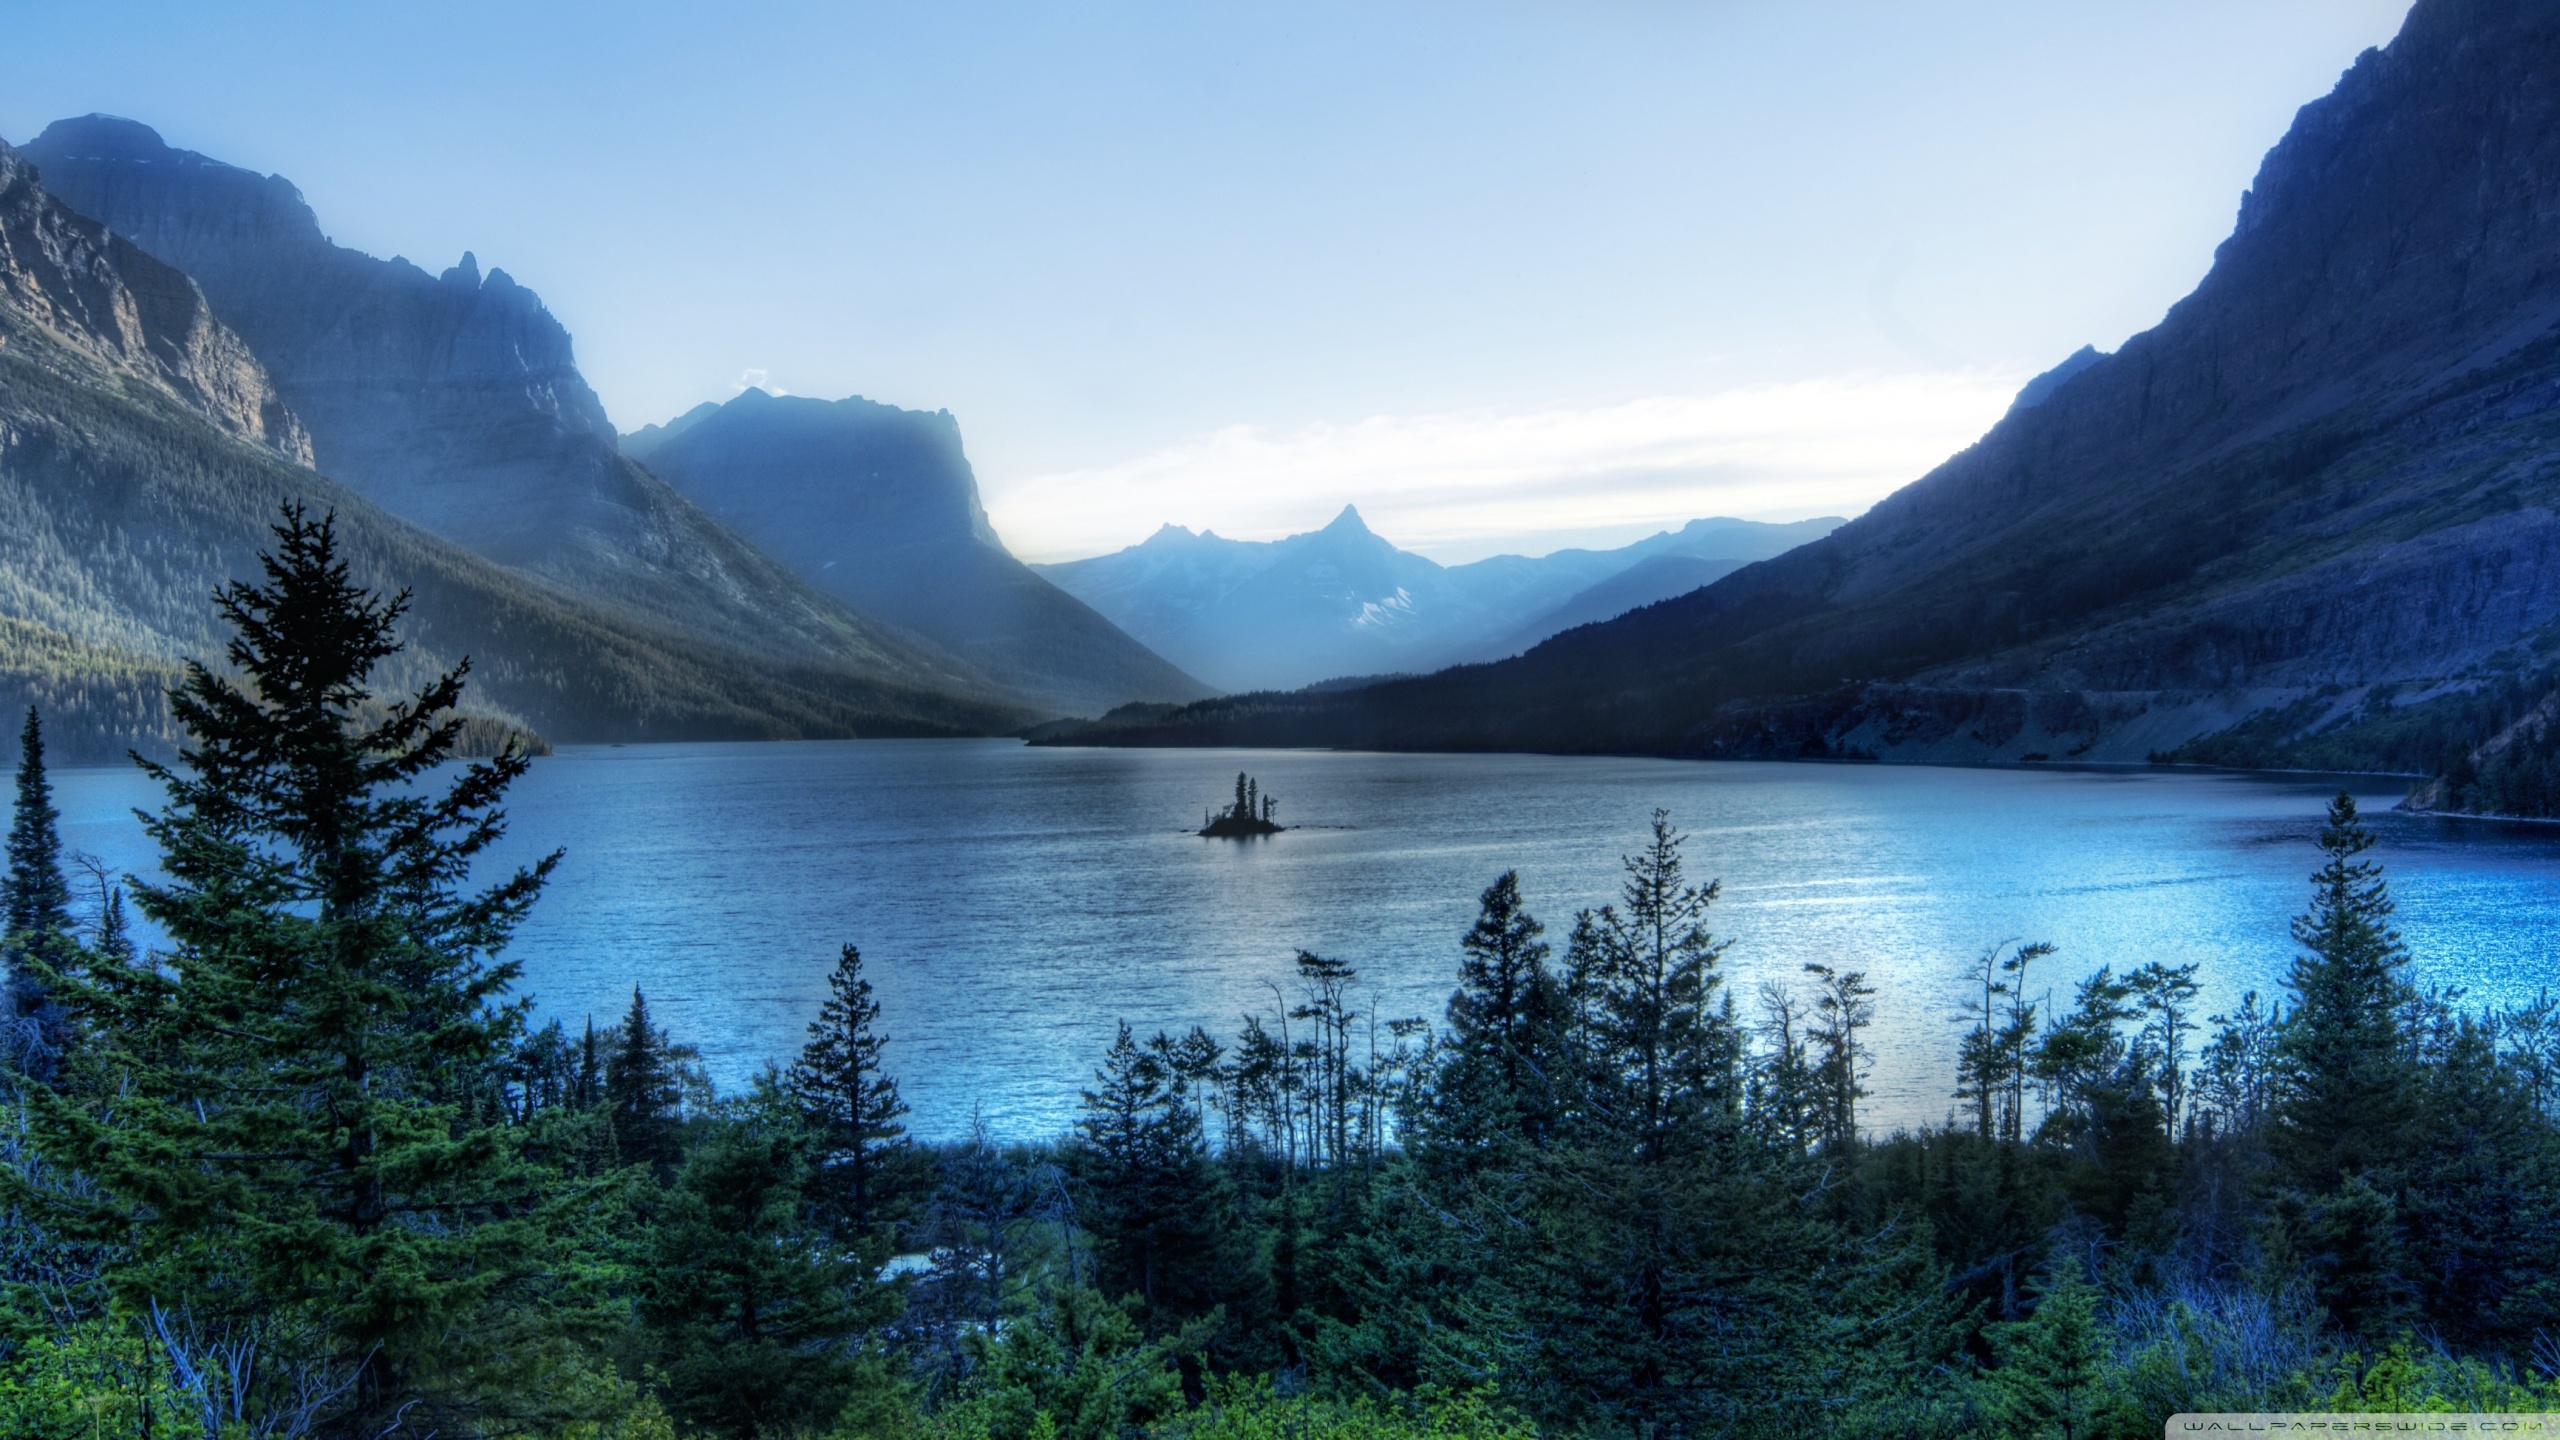 Glacier National Park Wallpapers and Background Images   stmednet